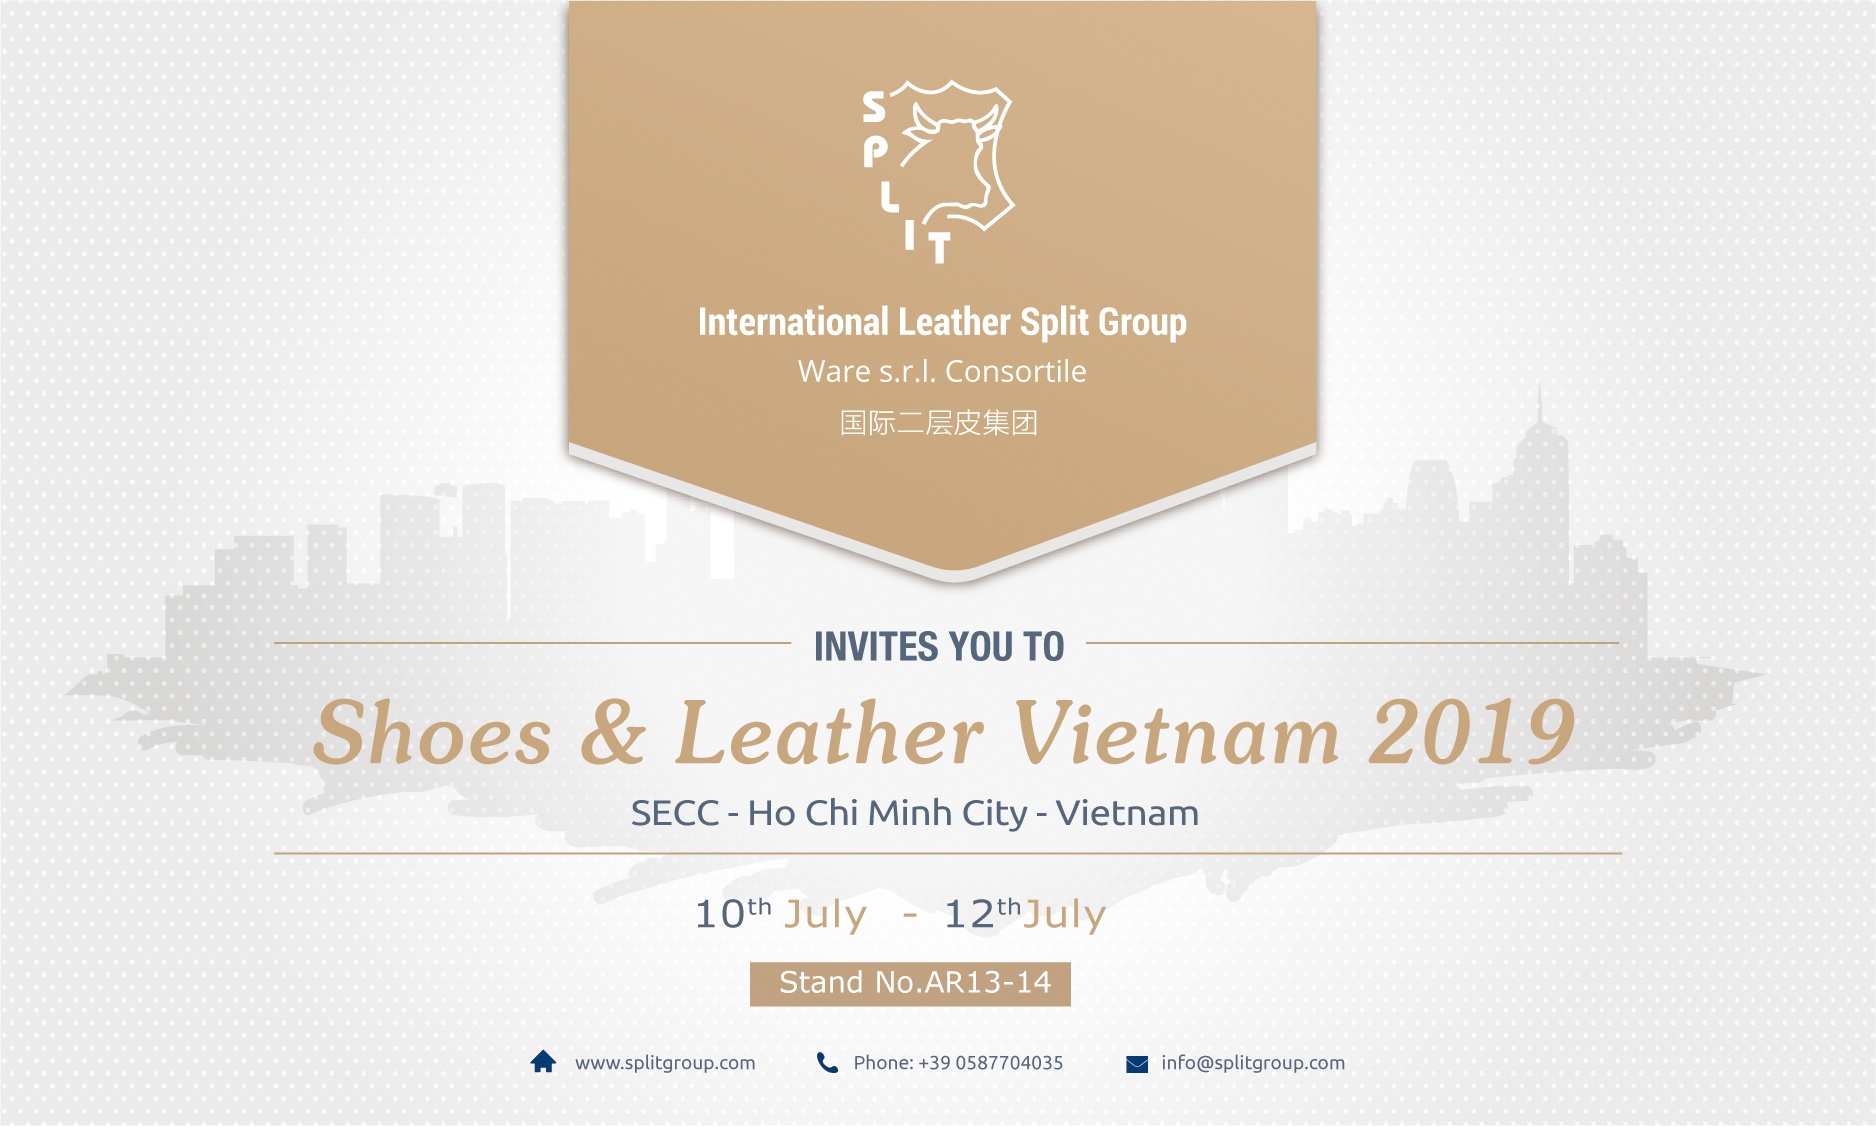 Shoes & Leather Vietnam 2019